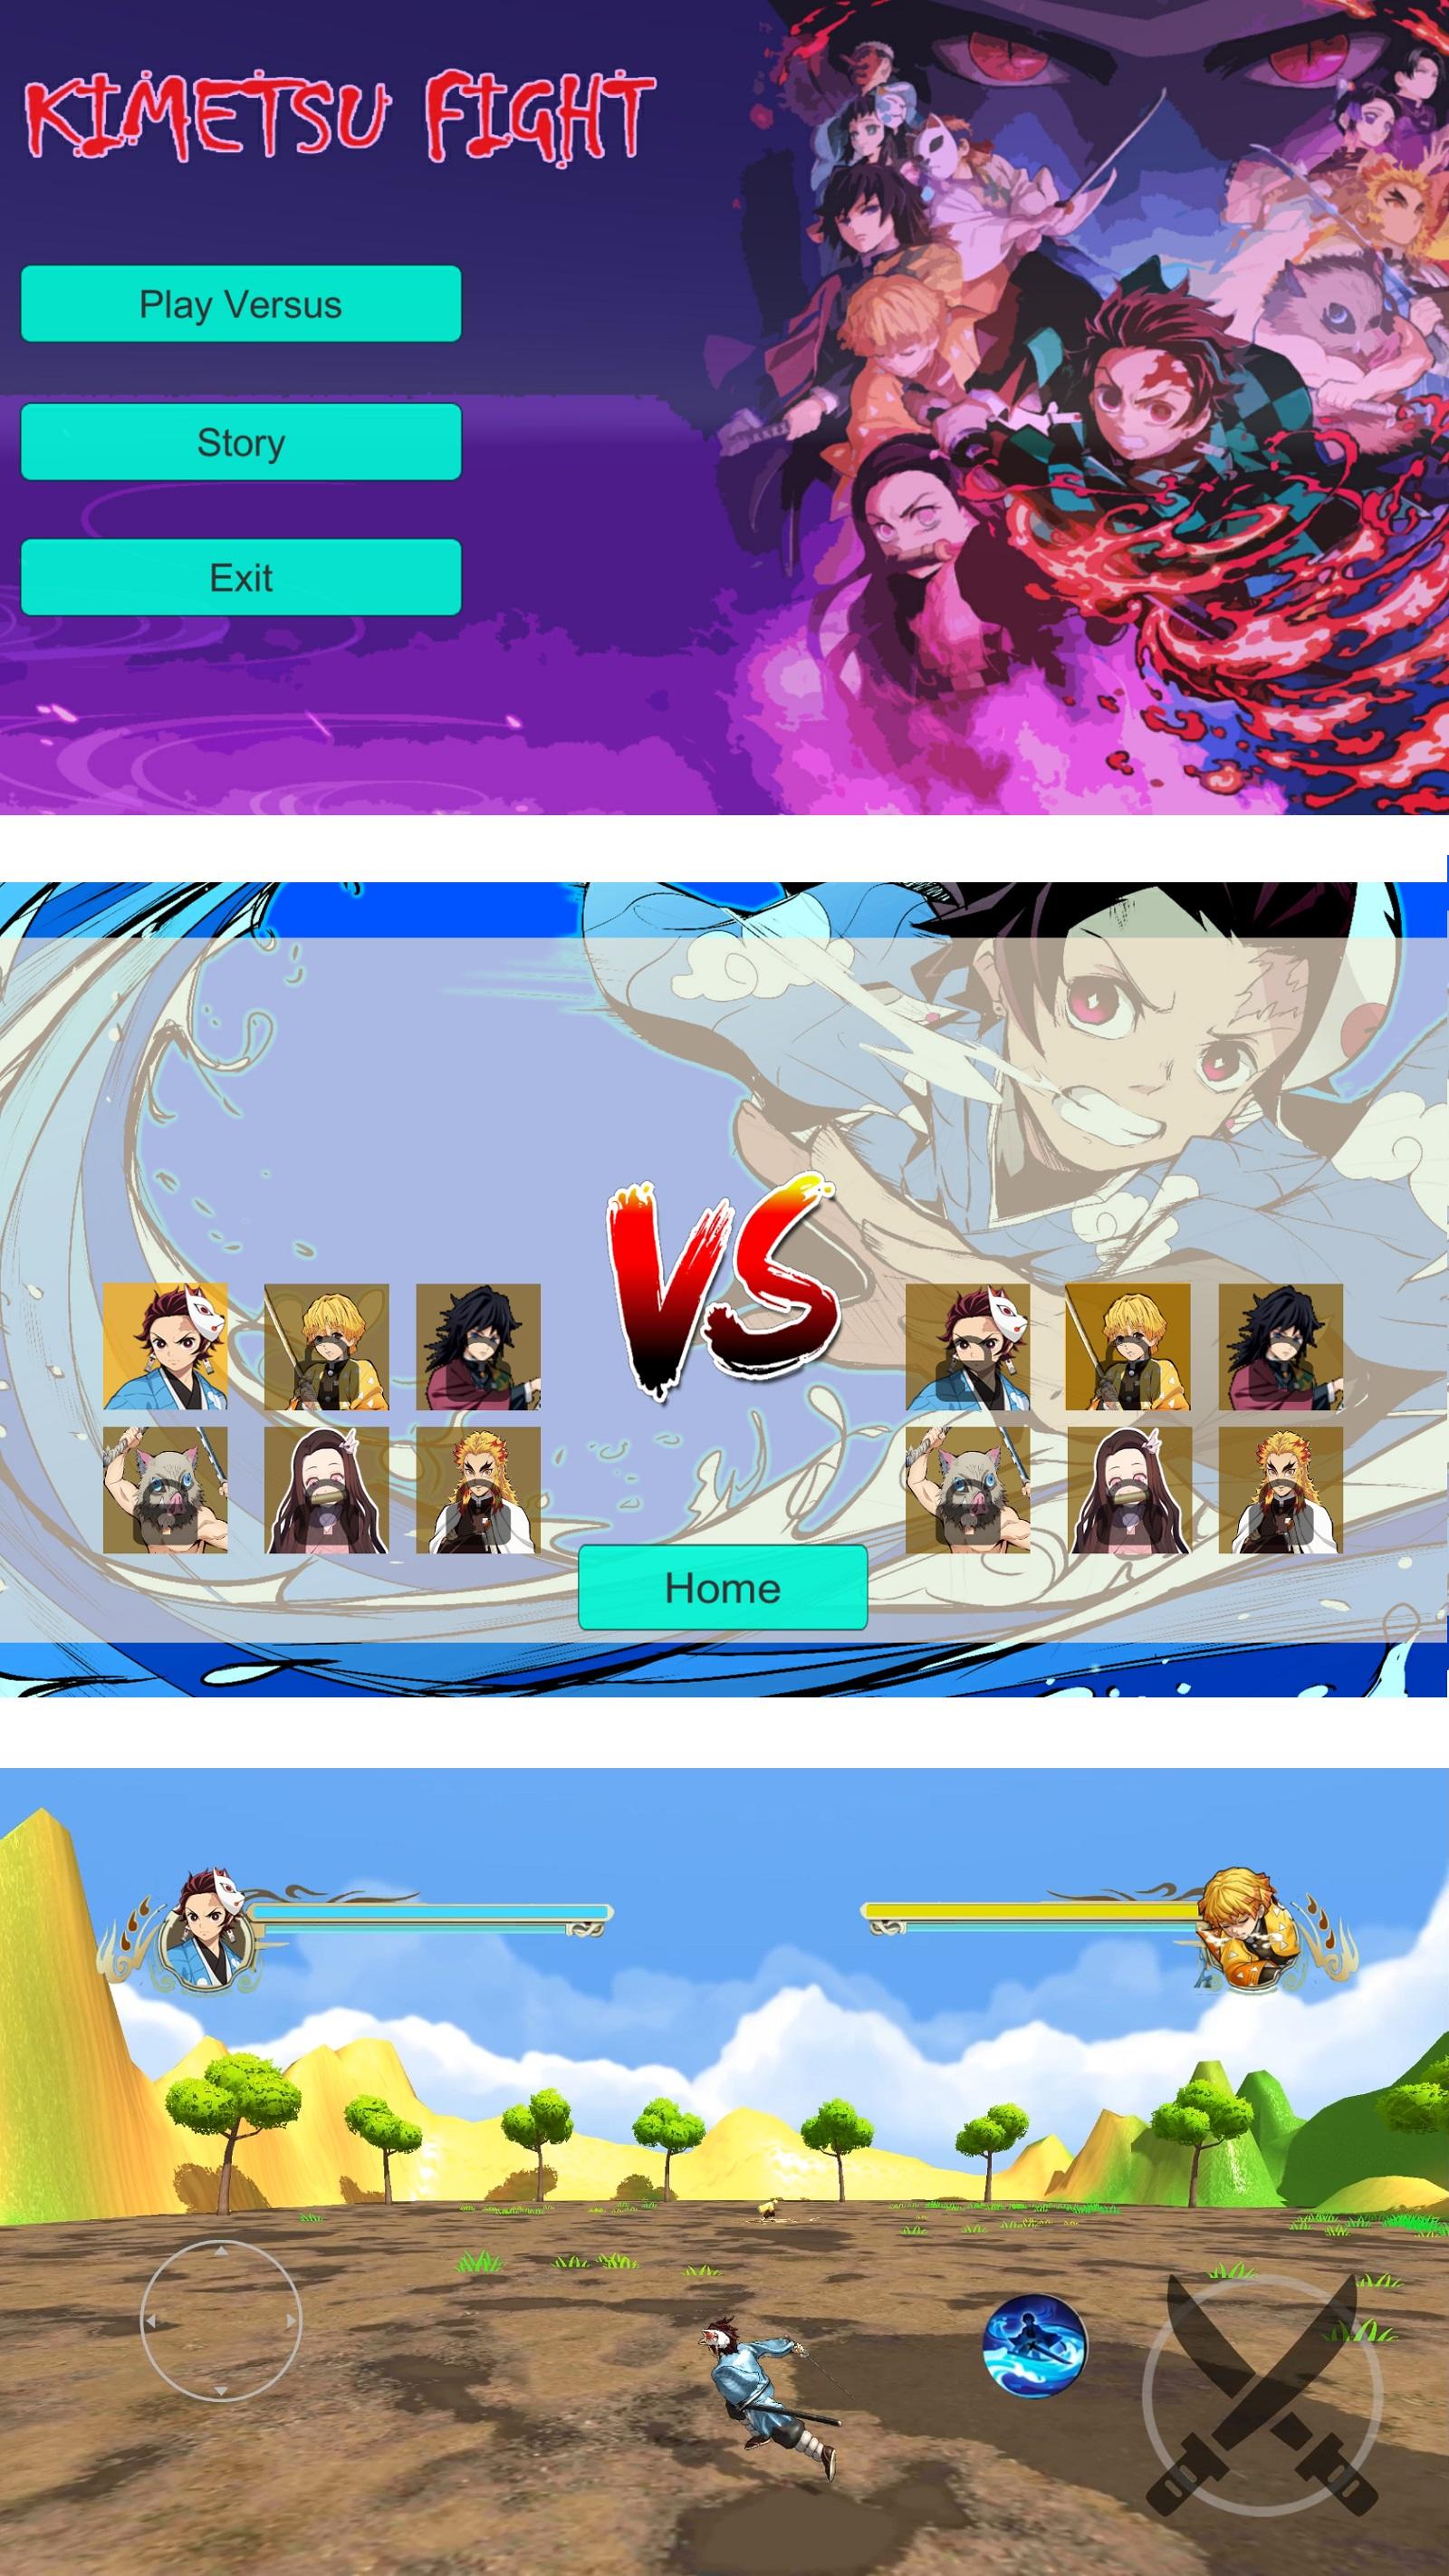 Kimetsu Fight - Demon Slayer screenshot game